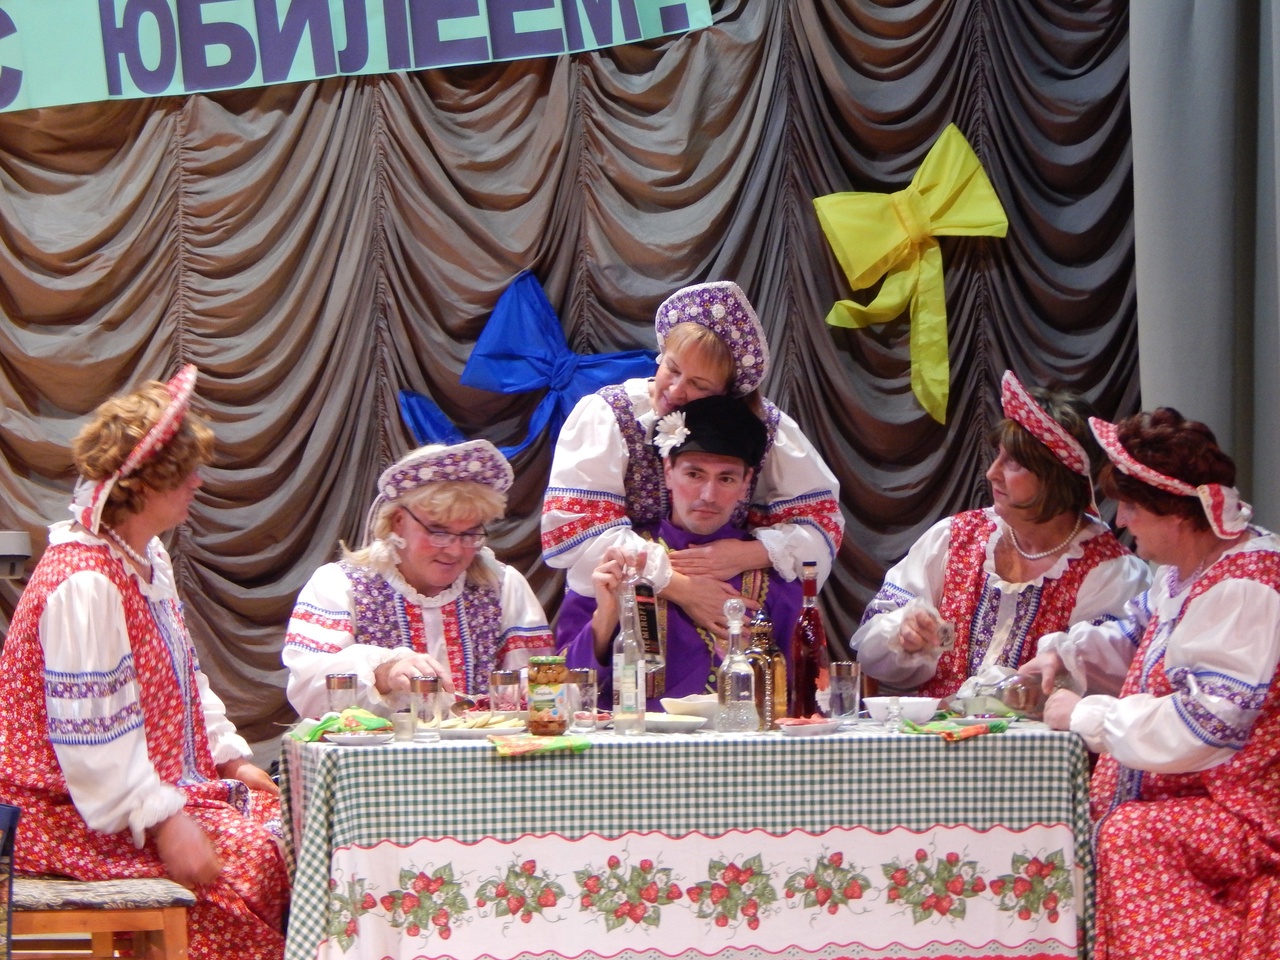 Народный театр показал в Торопце «Бабу Шанель»